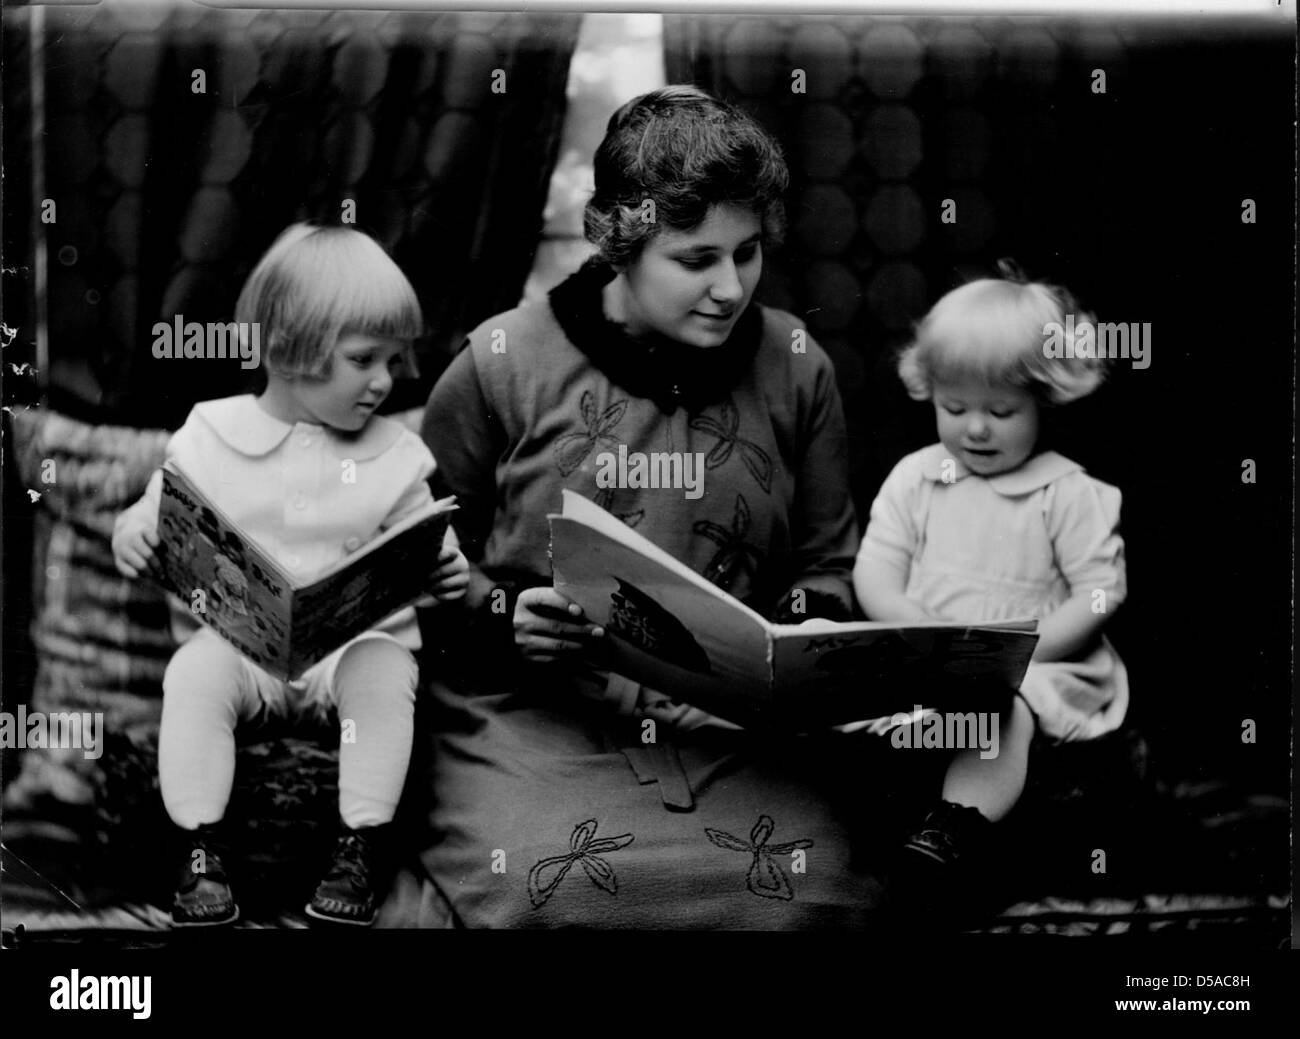 Estudiante leyendo a dos niñas pequeñas. Fotografiado en 1920 Catálogo de economía doméstica por Troy. Foto de stock